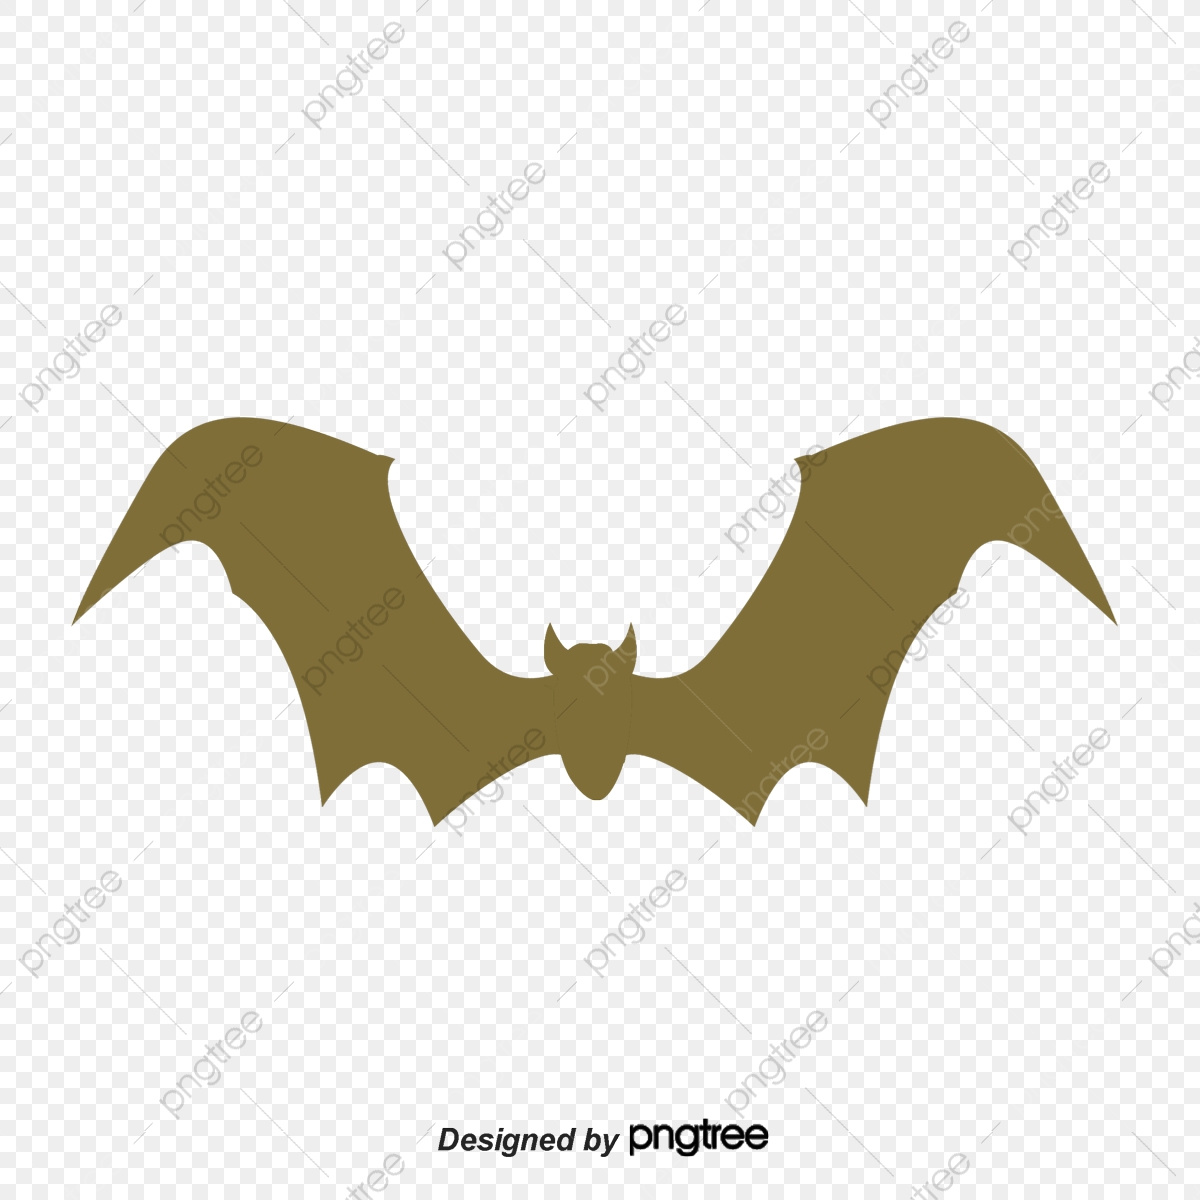 bat clipart simple